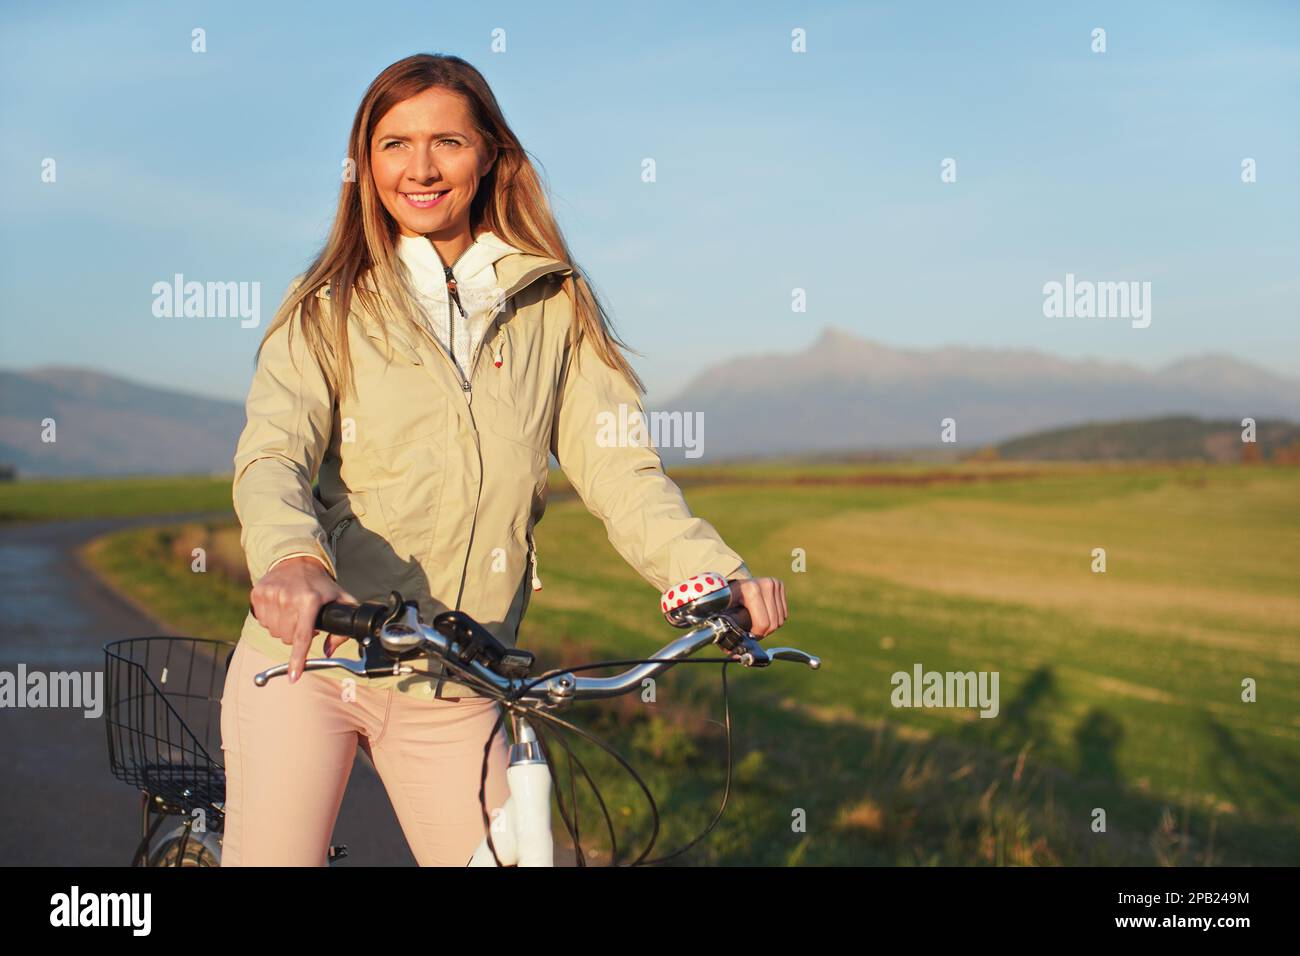 Junge Frau in Jacke steht mit dem Fahrrad auf Asphalt Landstraße, Nachmittag Sonne scheint auf Feldern Wiesen und Berge Hintergrund Stockfoto